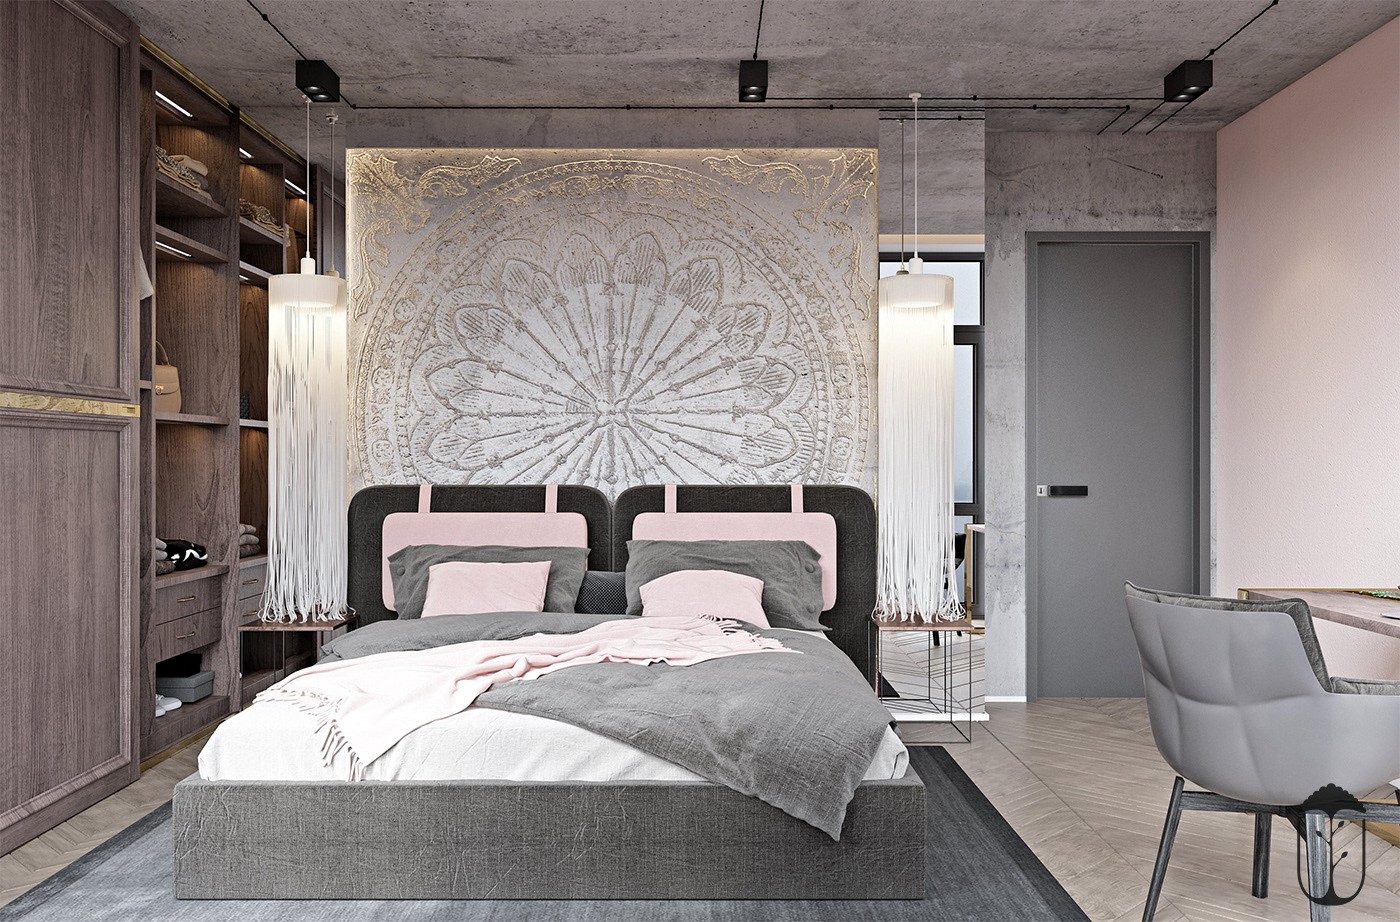 无主灯设计使得次卧更加开阔透亮，灰白色调的床铺家具，让卧室更加温暖如昔。